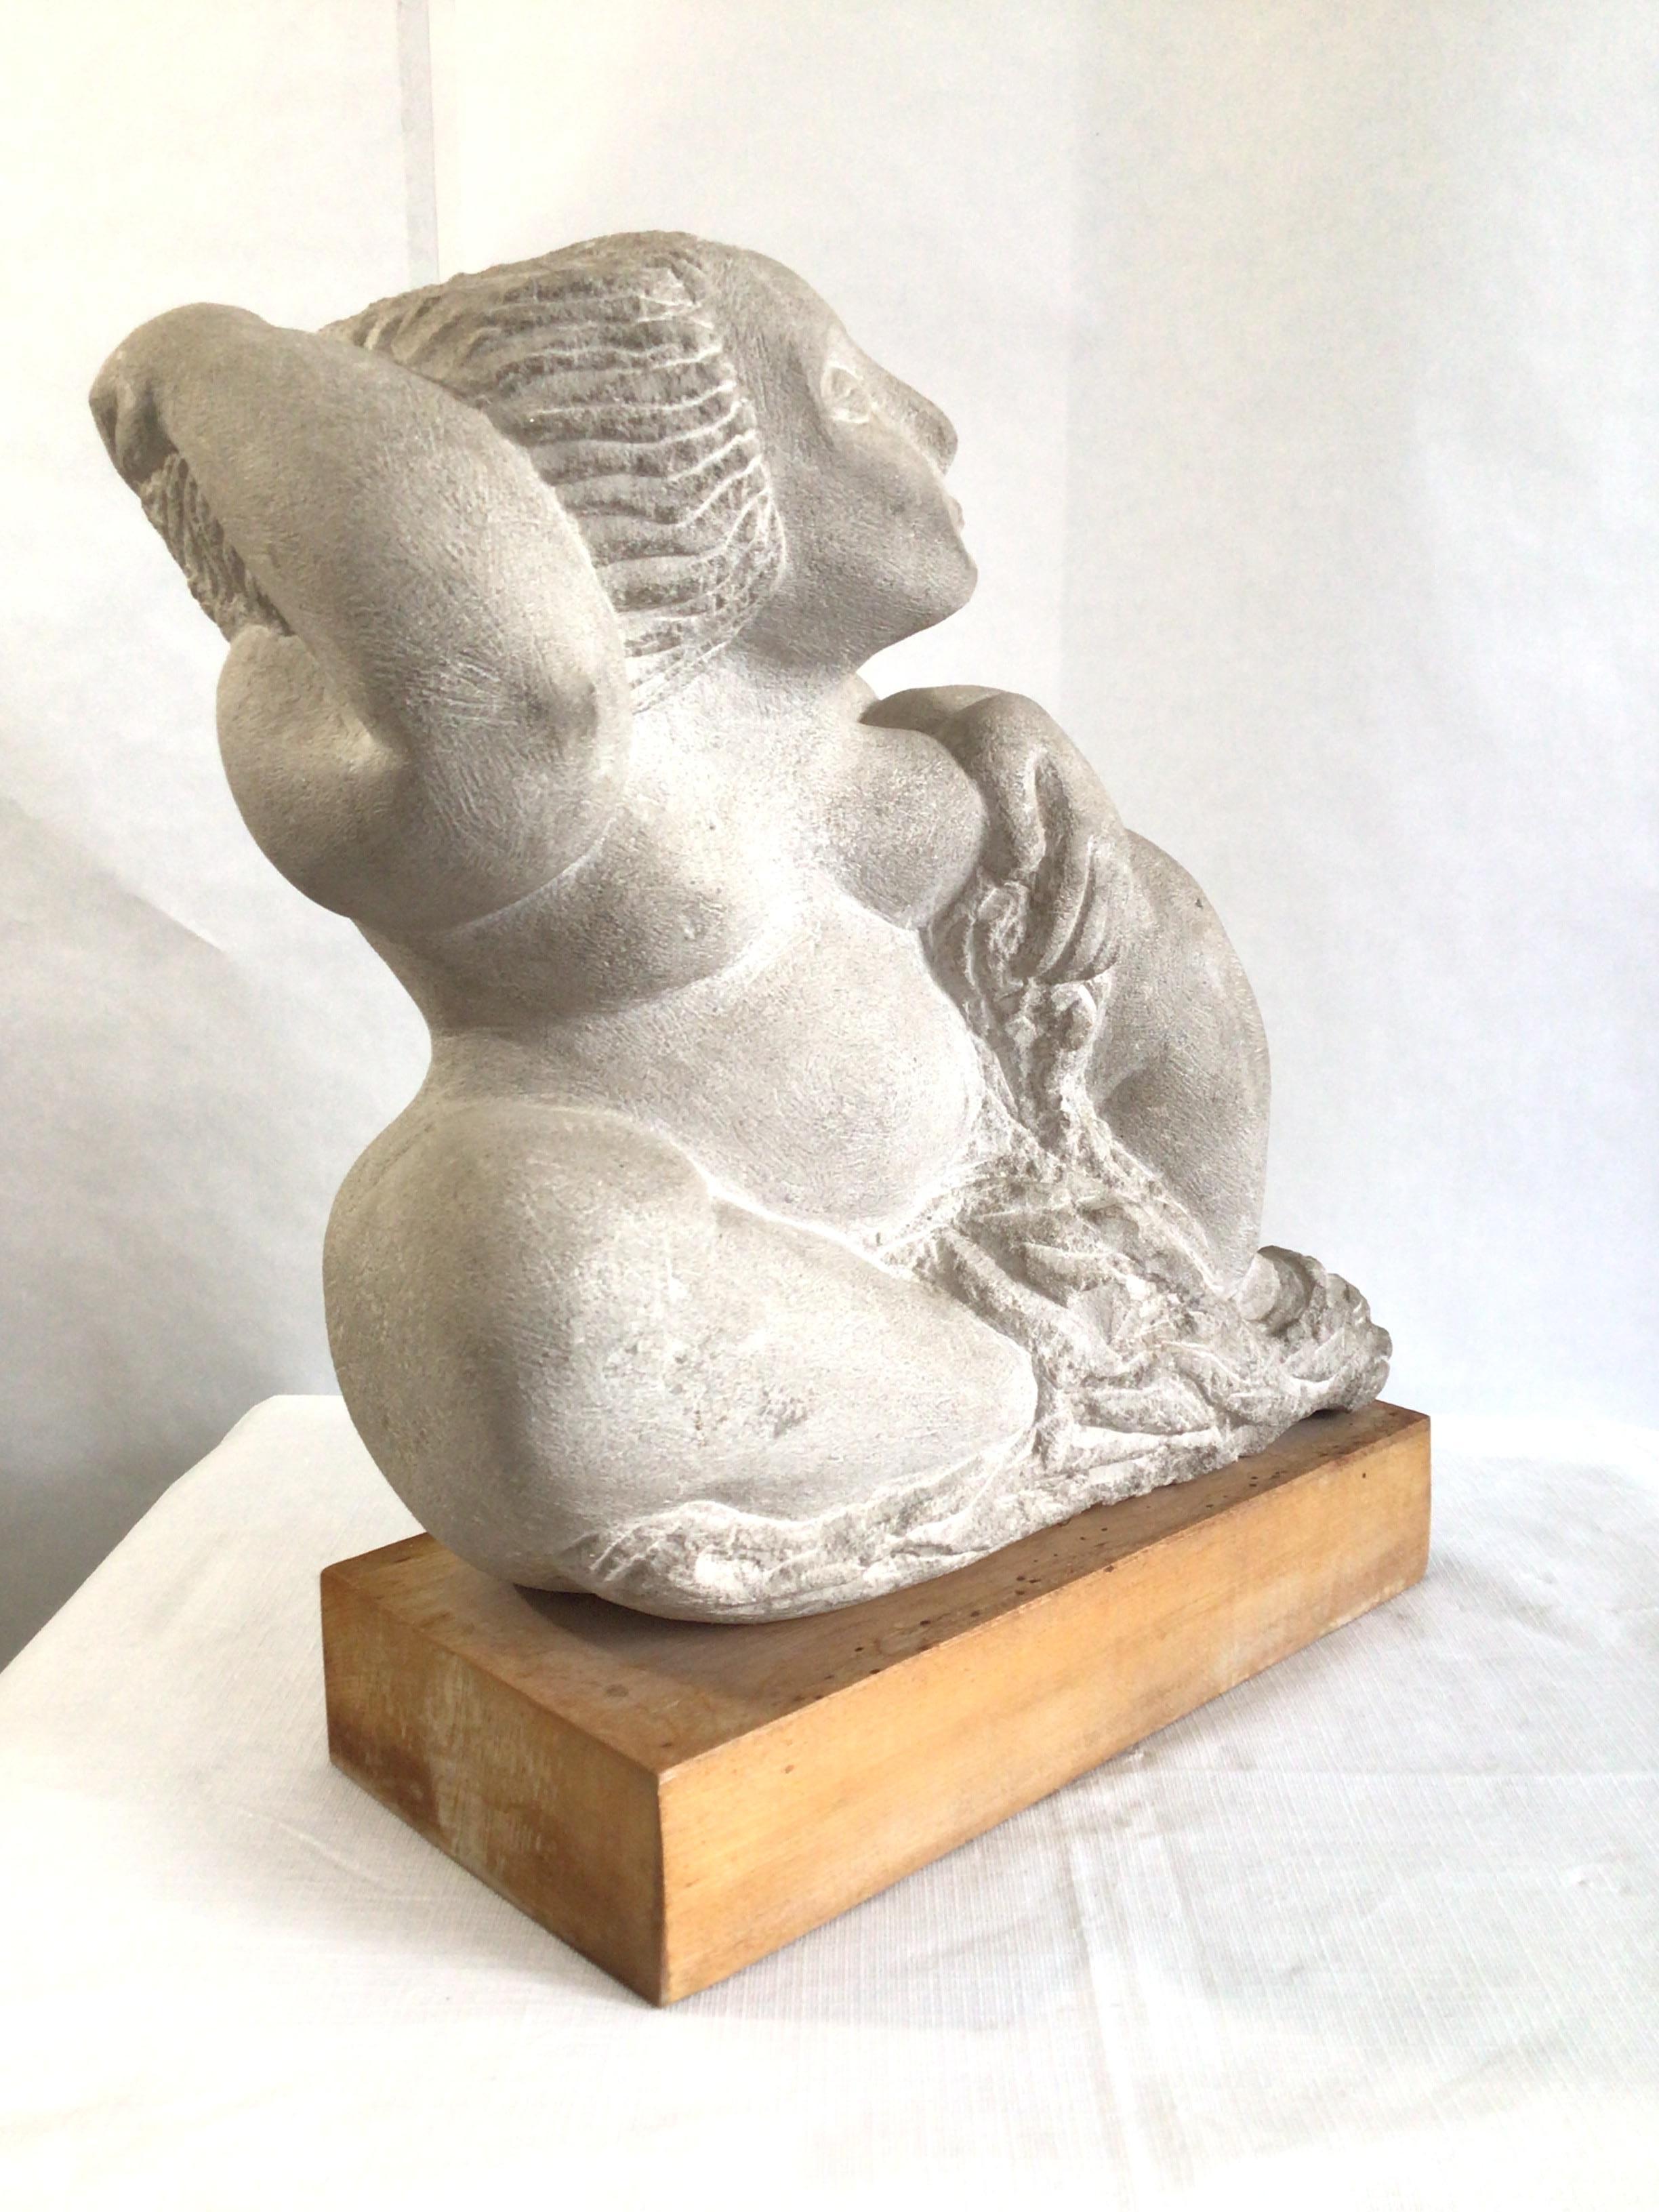 voluptuous woman sculpture